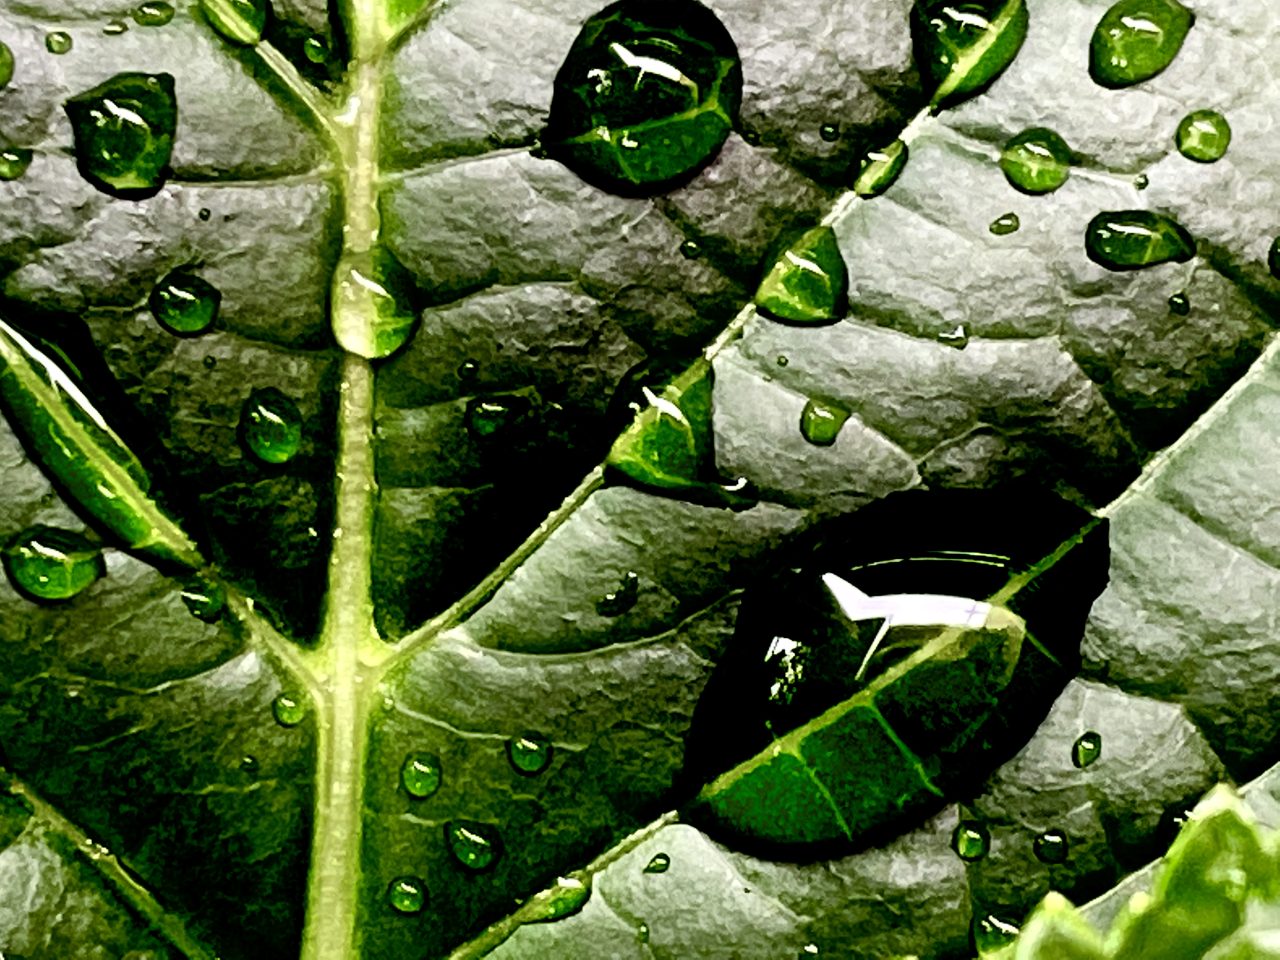 raindrops-on-a-green-leaf-2022-10-17-21-18-49-utc-1280x960.jpg